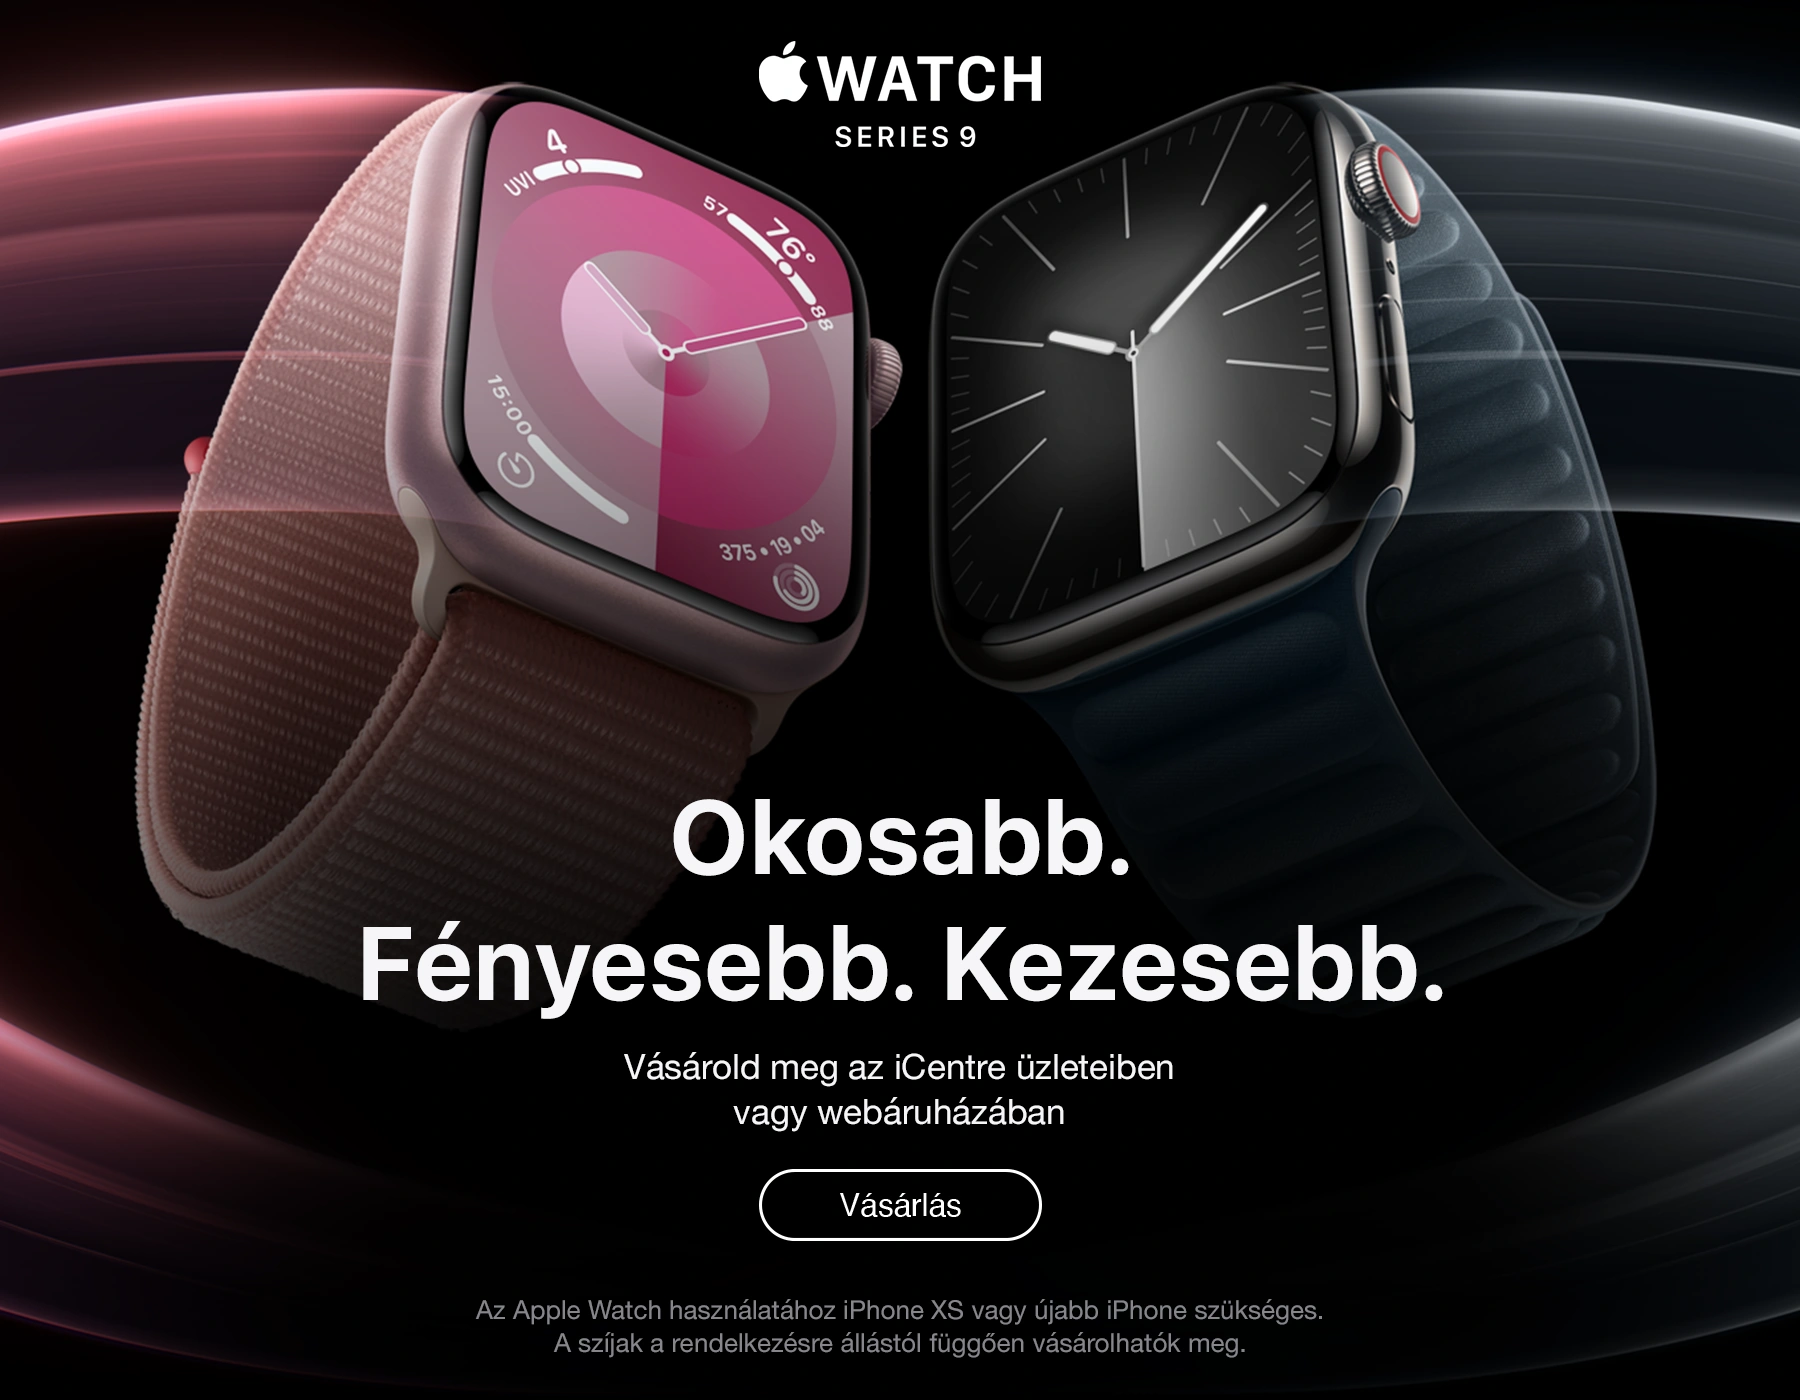 Az új Apple Watch 9 most még okosabb, fényesebb és kezesebb. A Series 9 segít aktívan élni, óvni az egészségedet és a testi épségedet